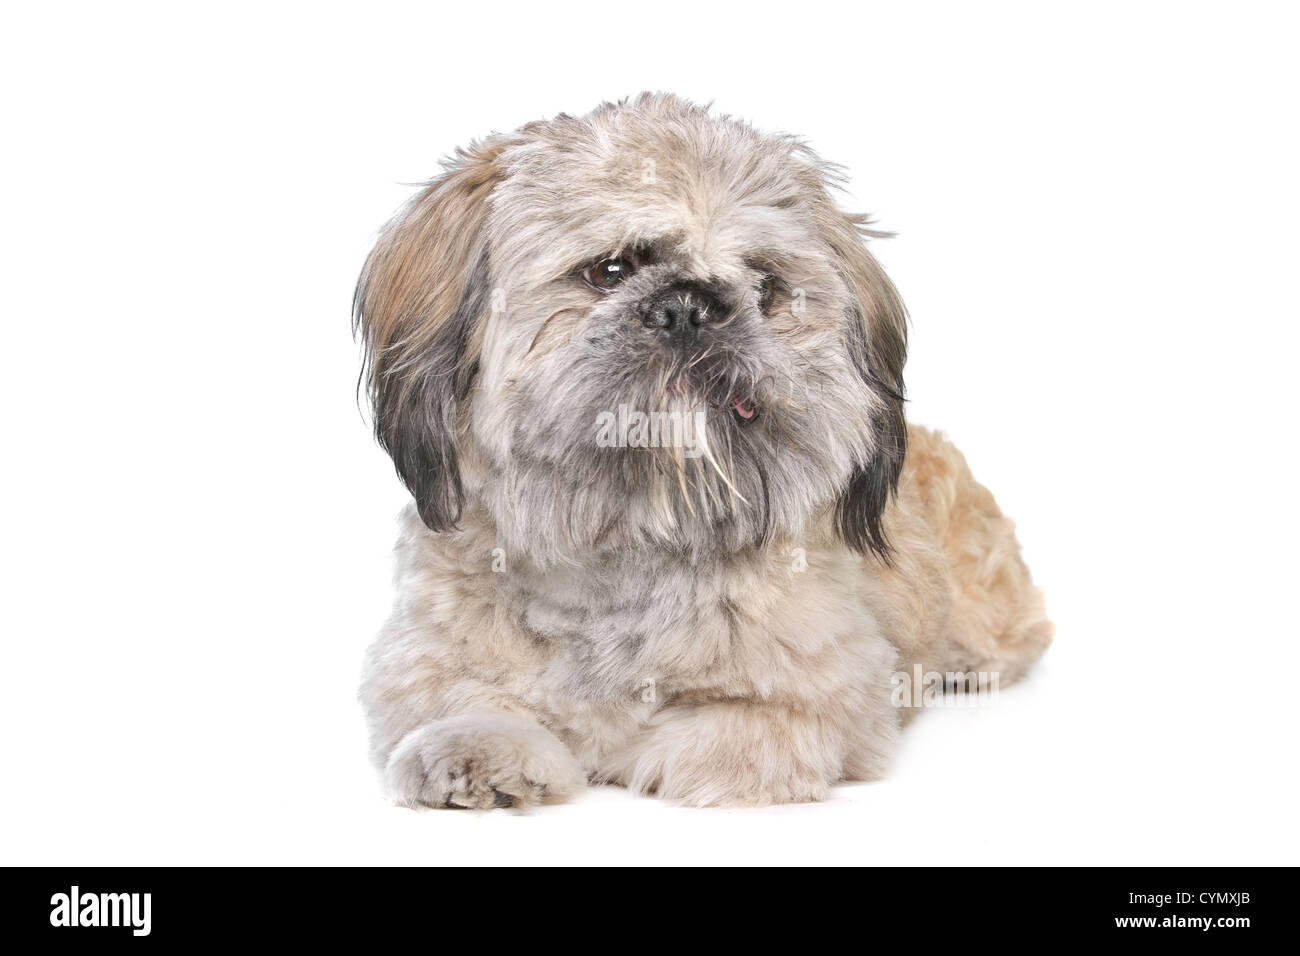 Mischling eines Shih Tzu und Pekingese Hund Stockfotografie - Alamy